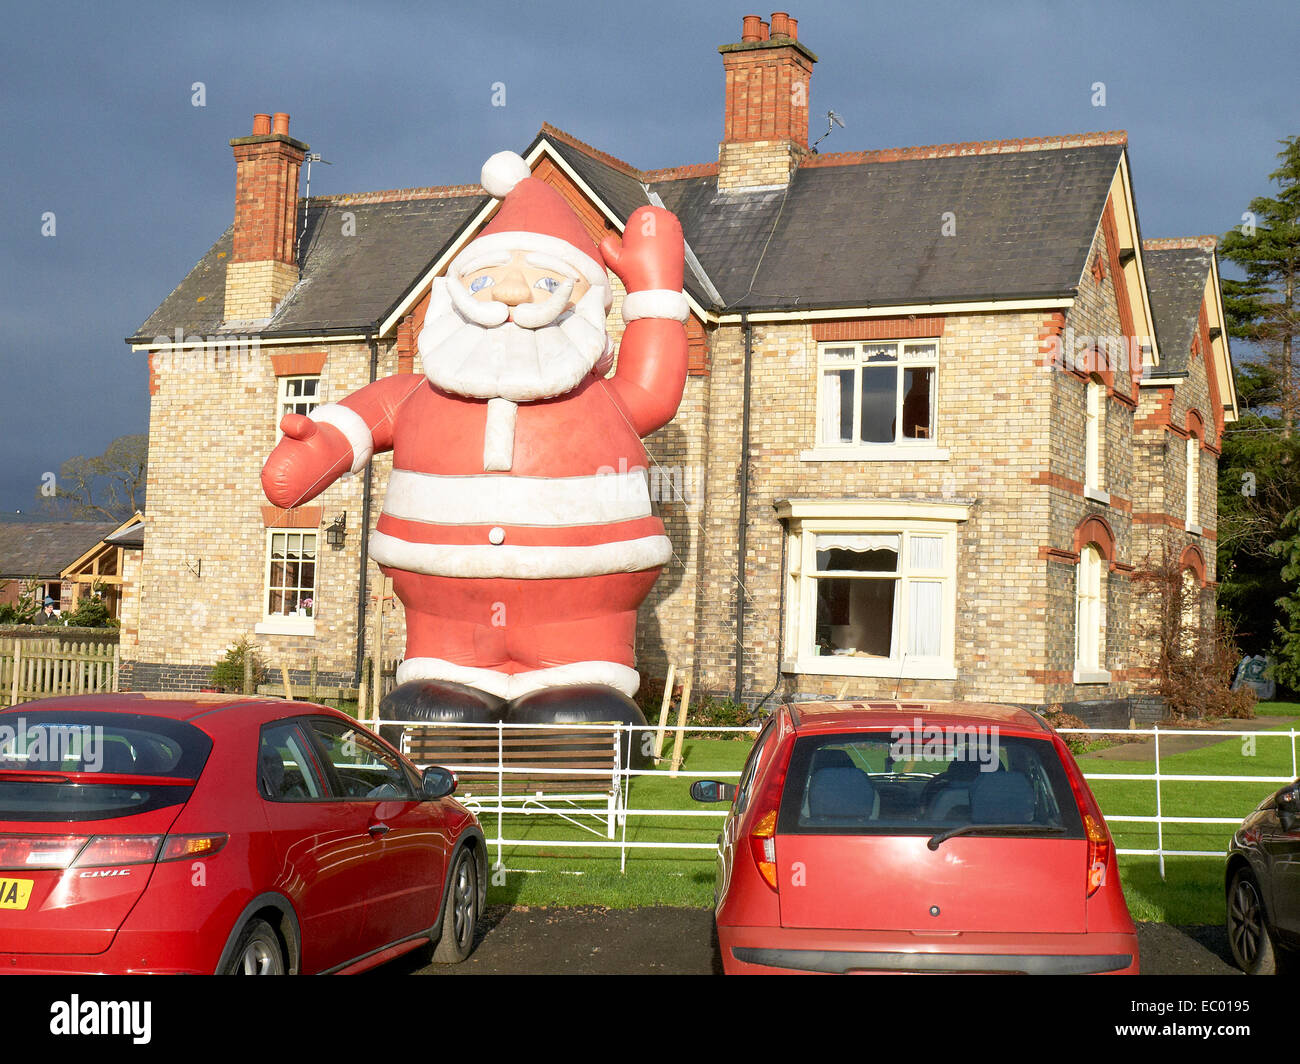 Le père Noël gonflable géant est exposé à Wheelock Hall Farm il attire de nombreux visiteurs de partout dans Cheshire. Banque D'Images